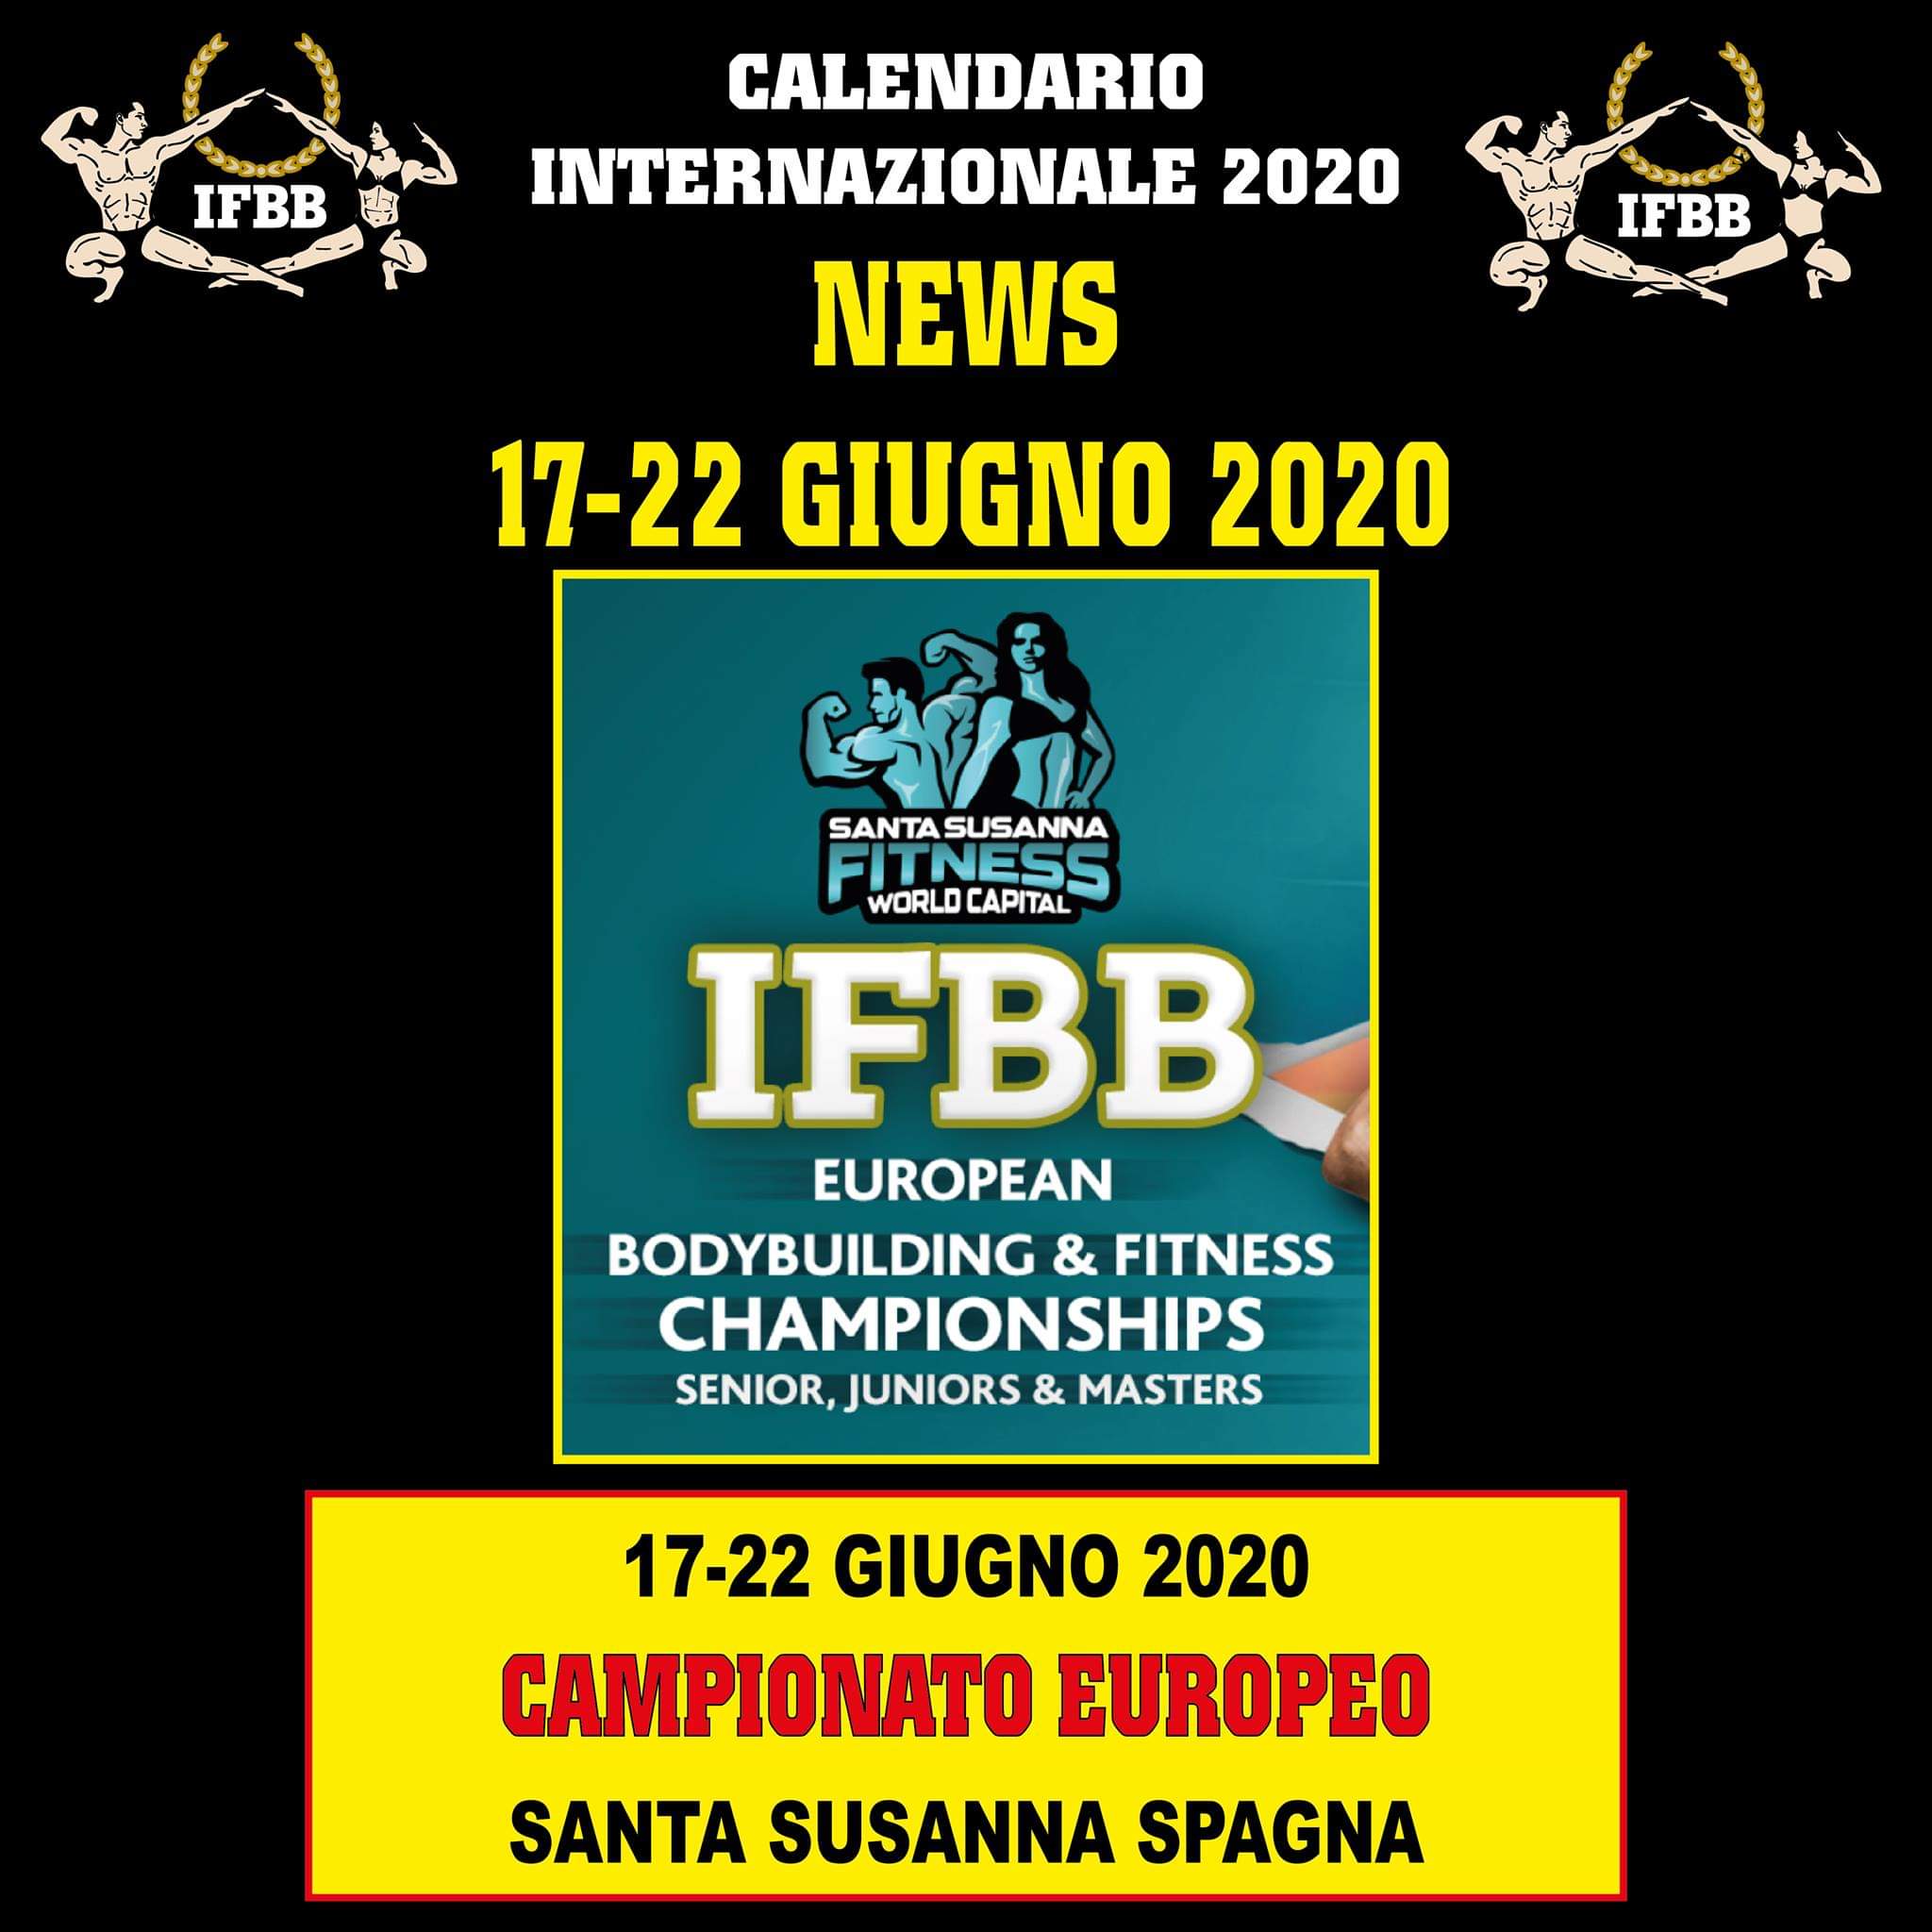 IFBB EUROPEAN BODYBUILDING & FITNESS CHAMPIONSHIPS 2020 EVENTO CANCELLATO